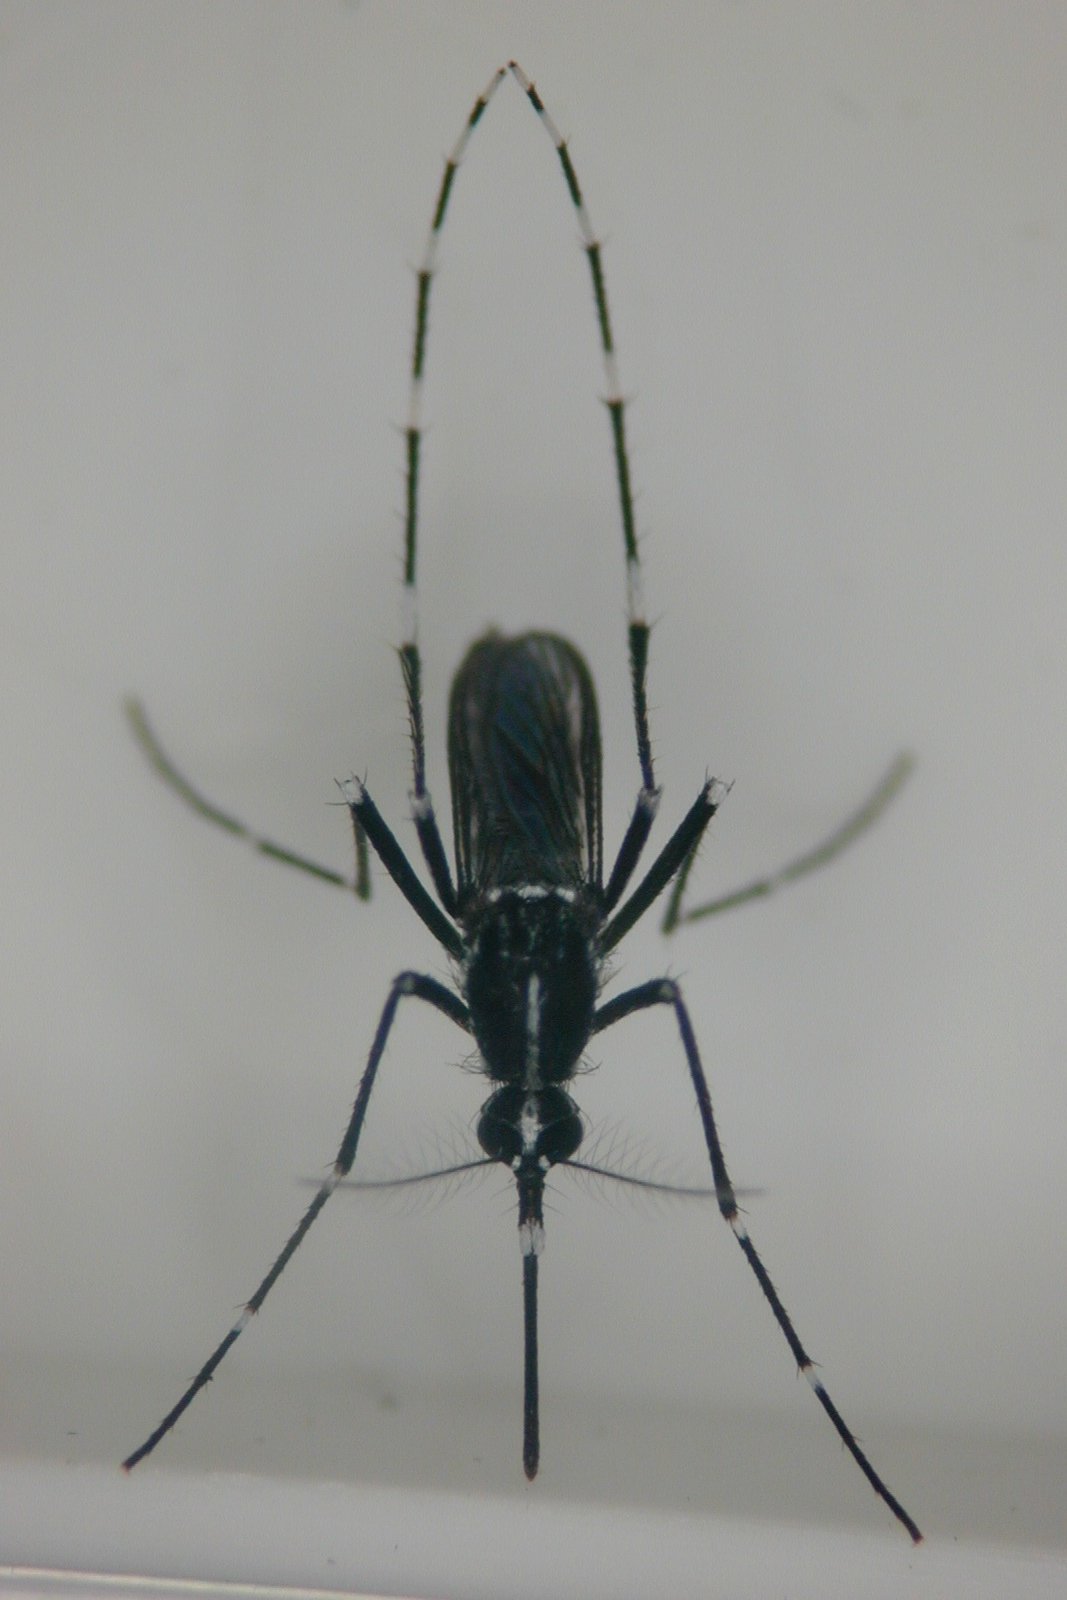 Direktes Bild der invasiven Stechmücke. Zu sehen ist der ganze Körer der Mücken. Frontal leicht von oben. Die Beine sind schwarz-weiß gestreift.